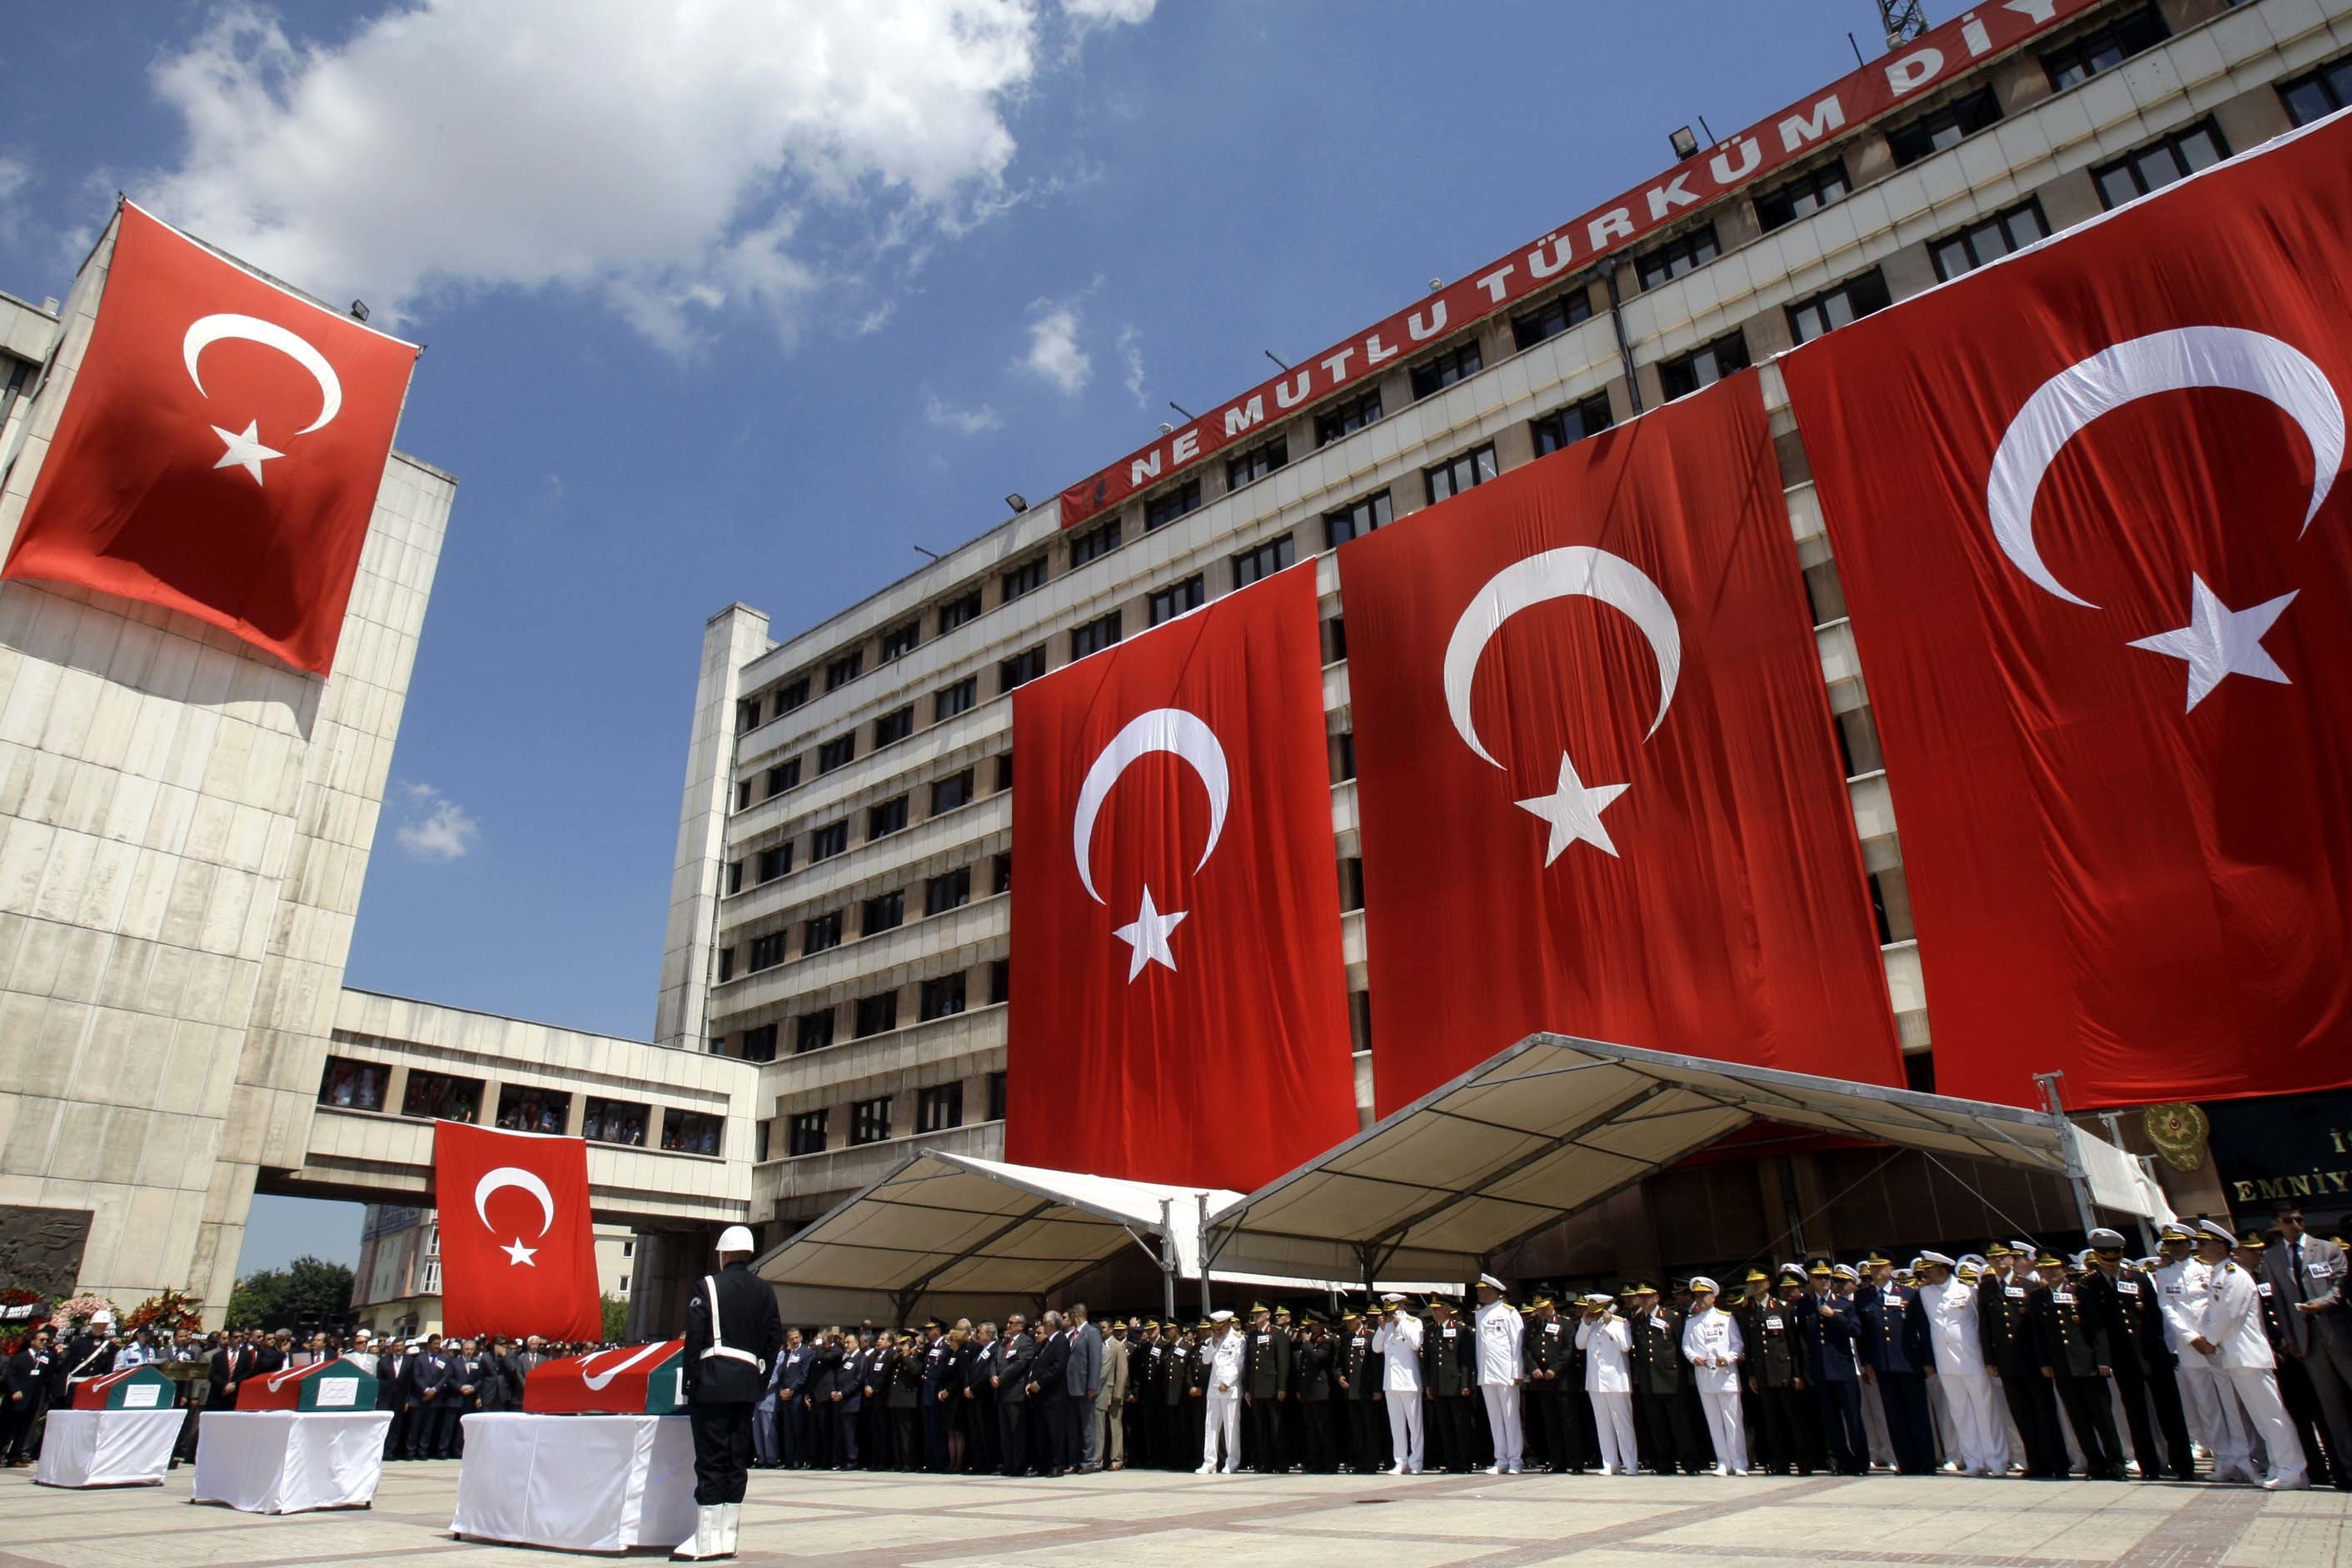 “Σκότωσαν” τον αρχηγό της ΜΙΤ – Όργιο φημών στη Κωνσταντινούπολη